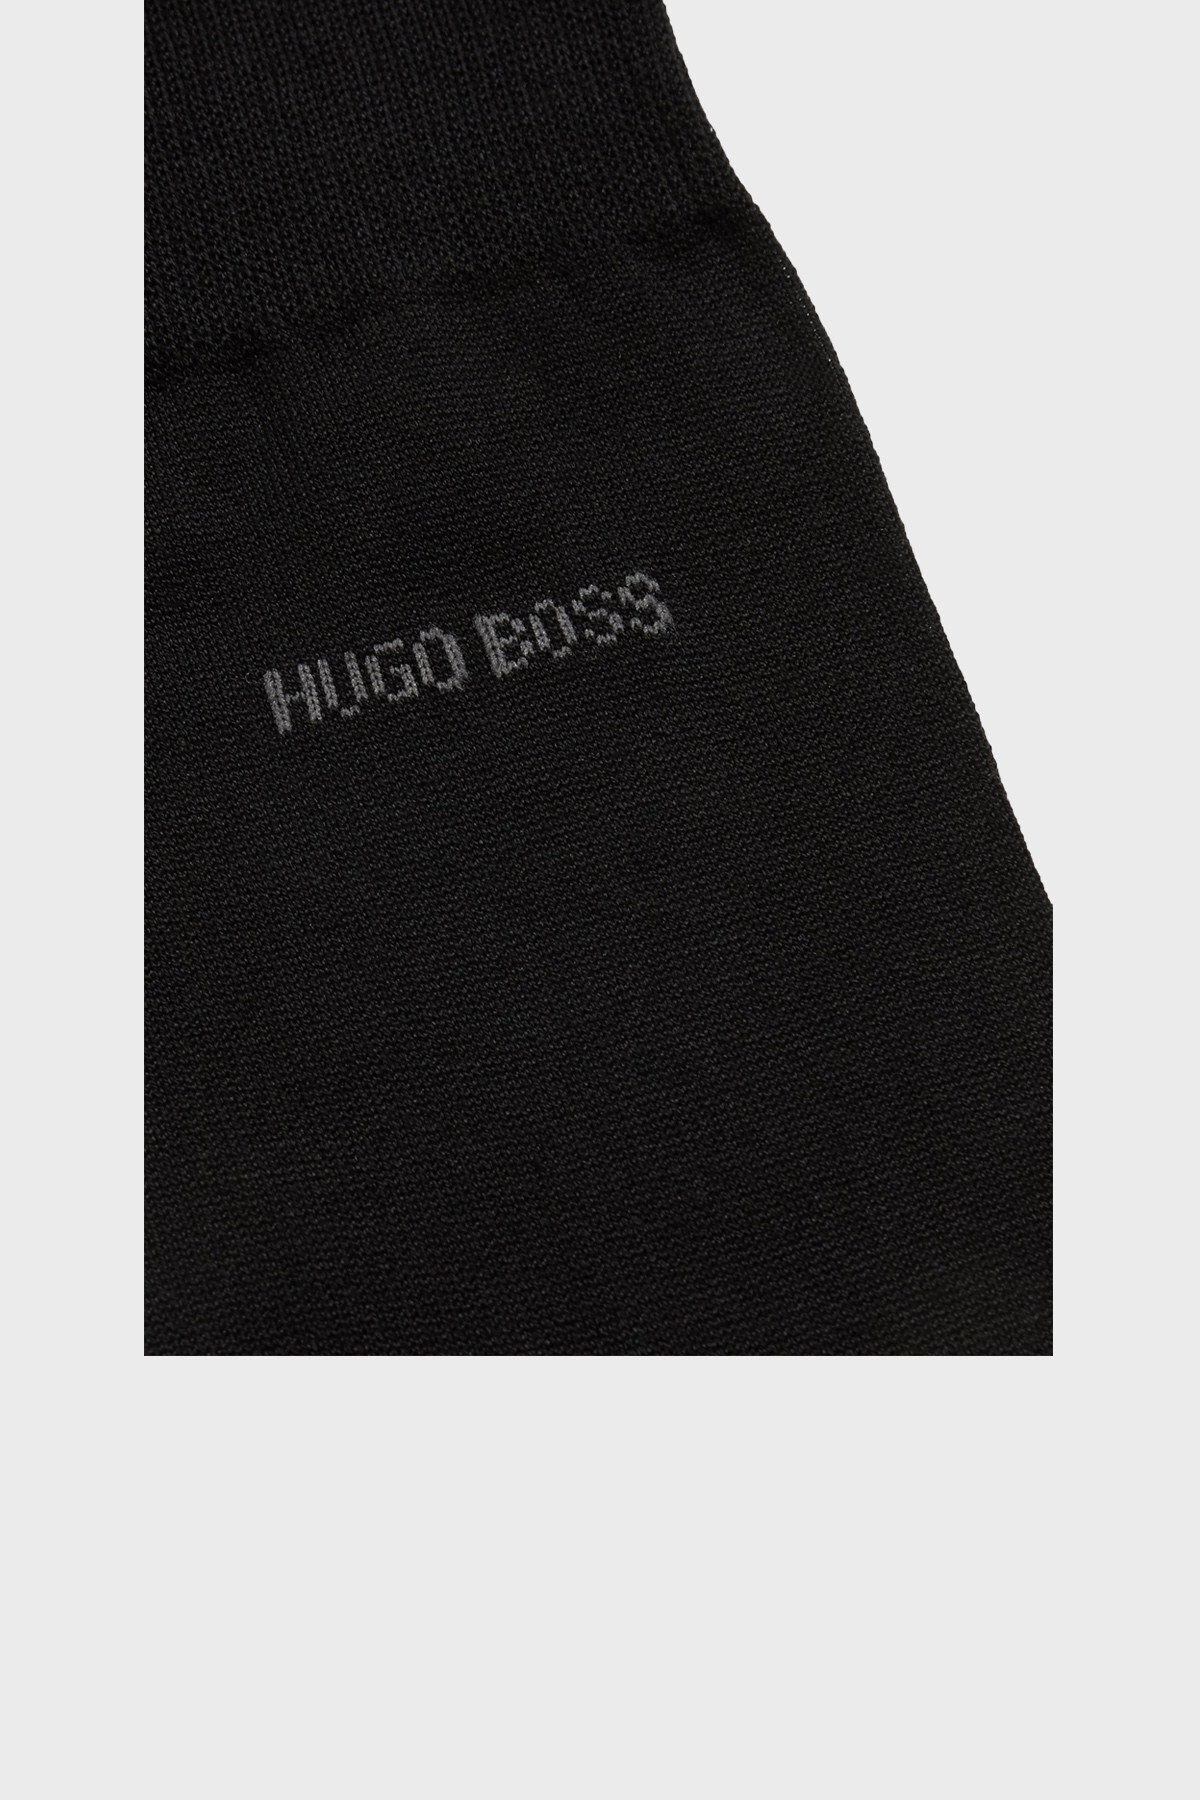 Hugo Boss Pamuklu Erkek Çorap 50388433 001 SİYAH